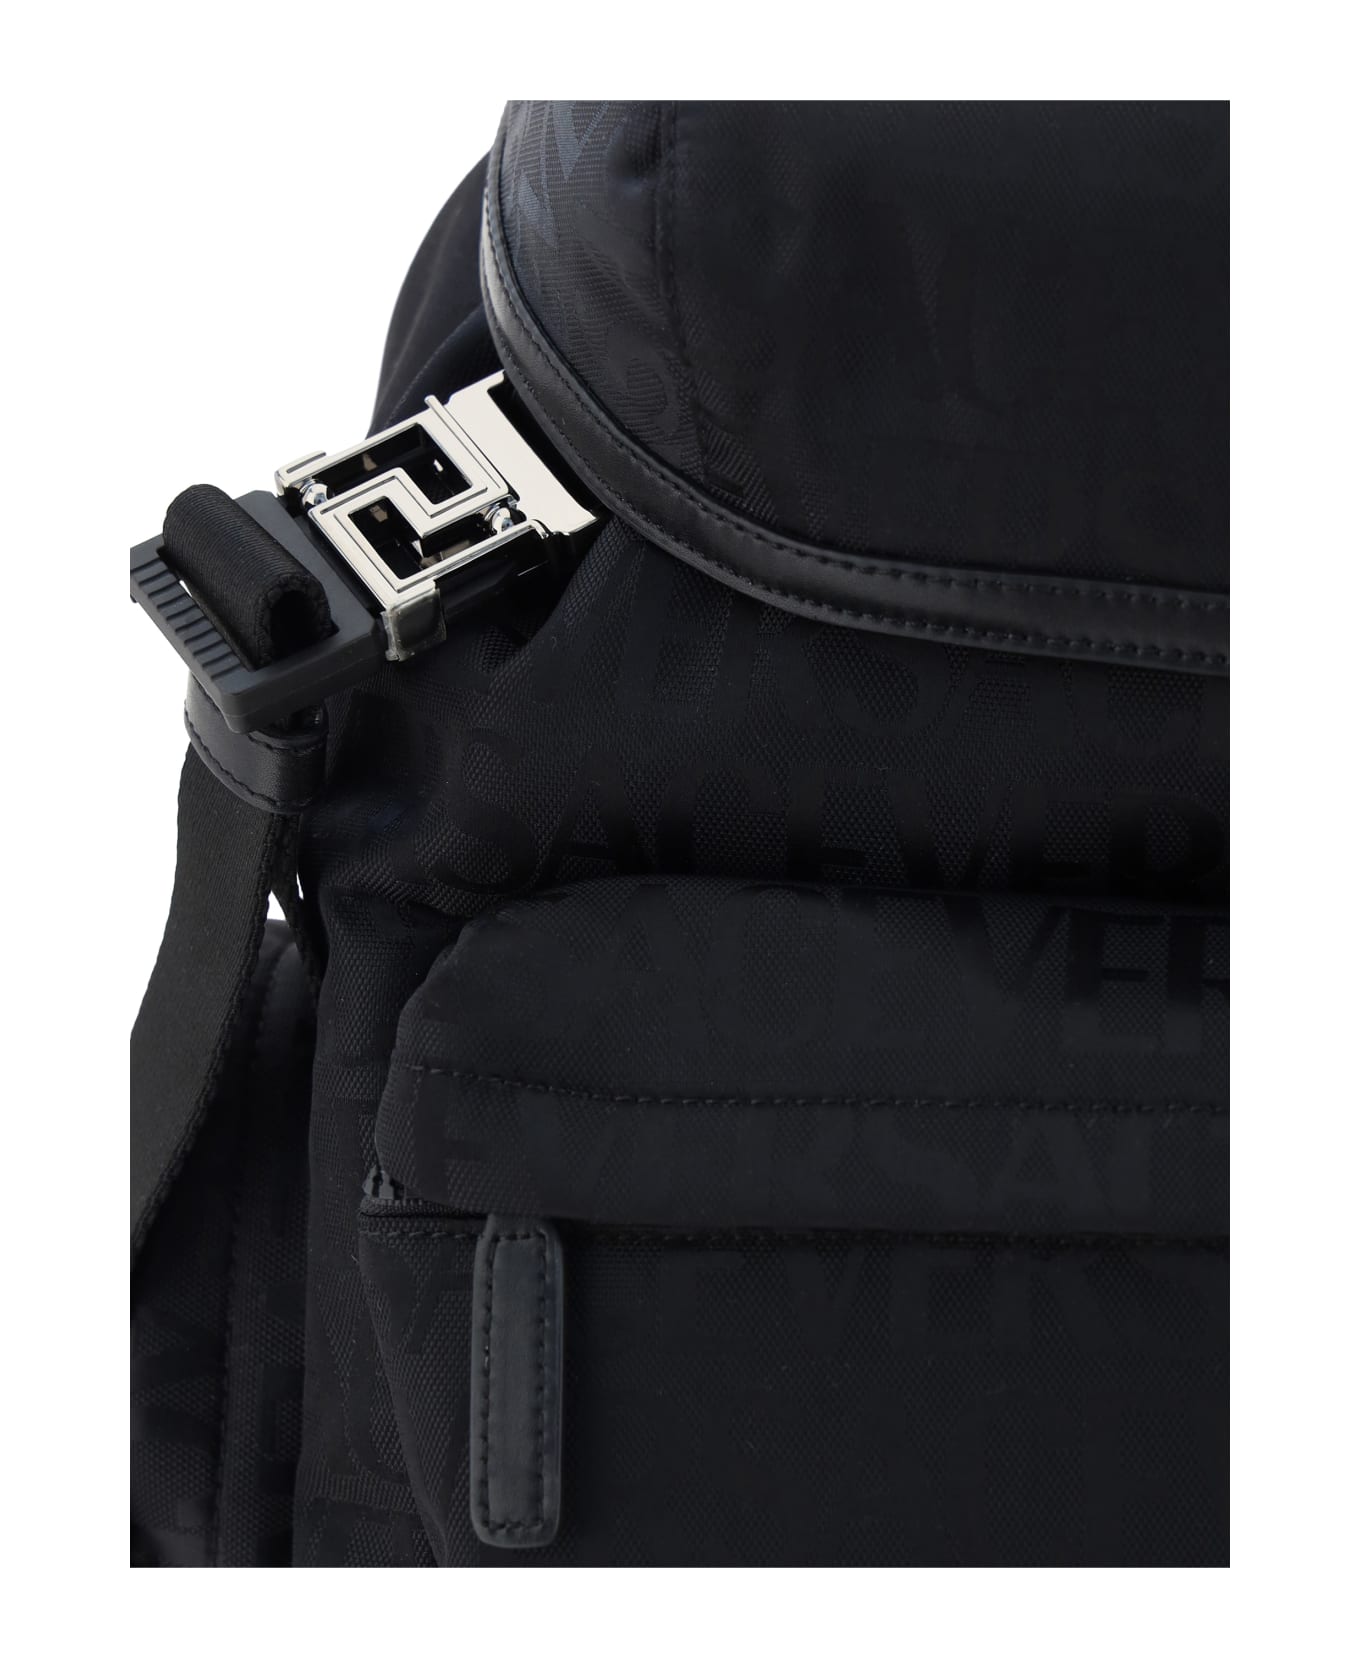 Versace Backpack - Nero-rutenio